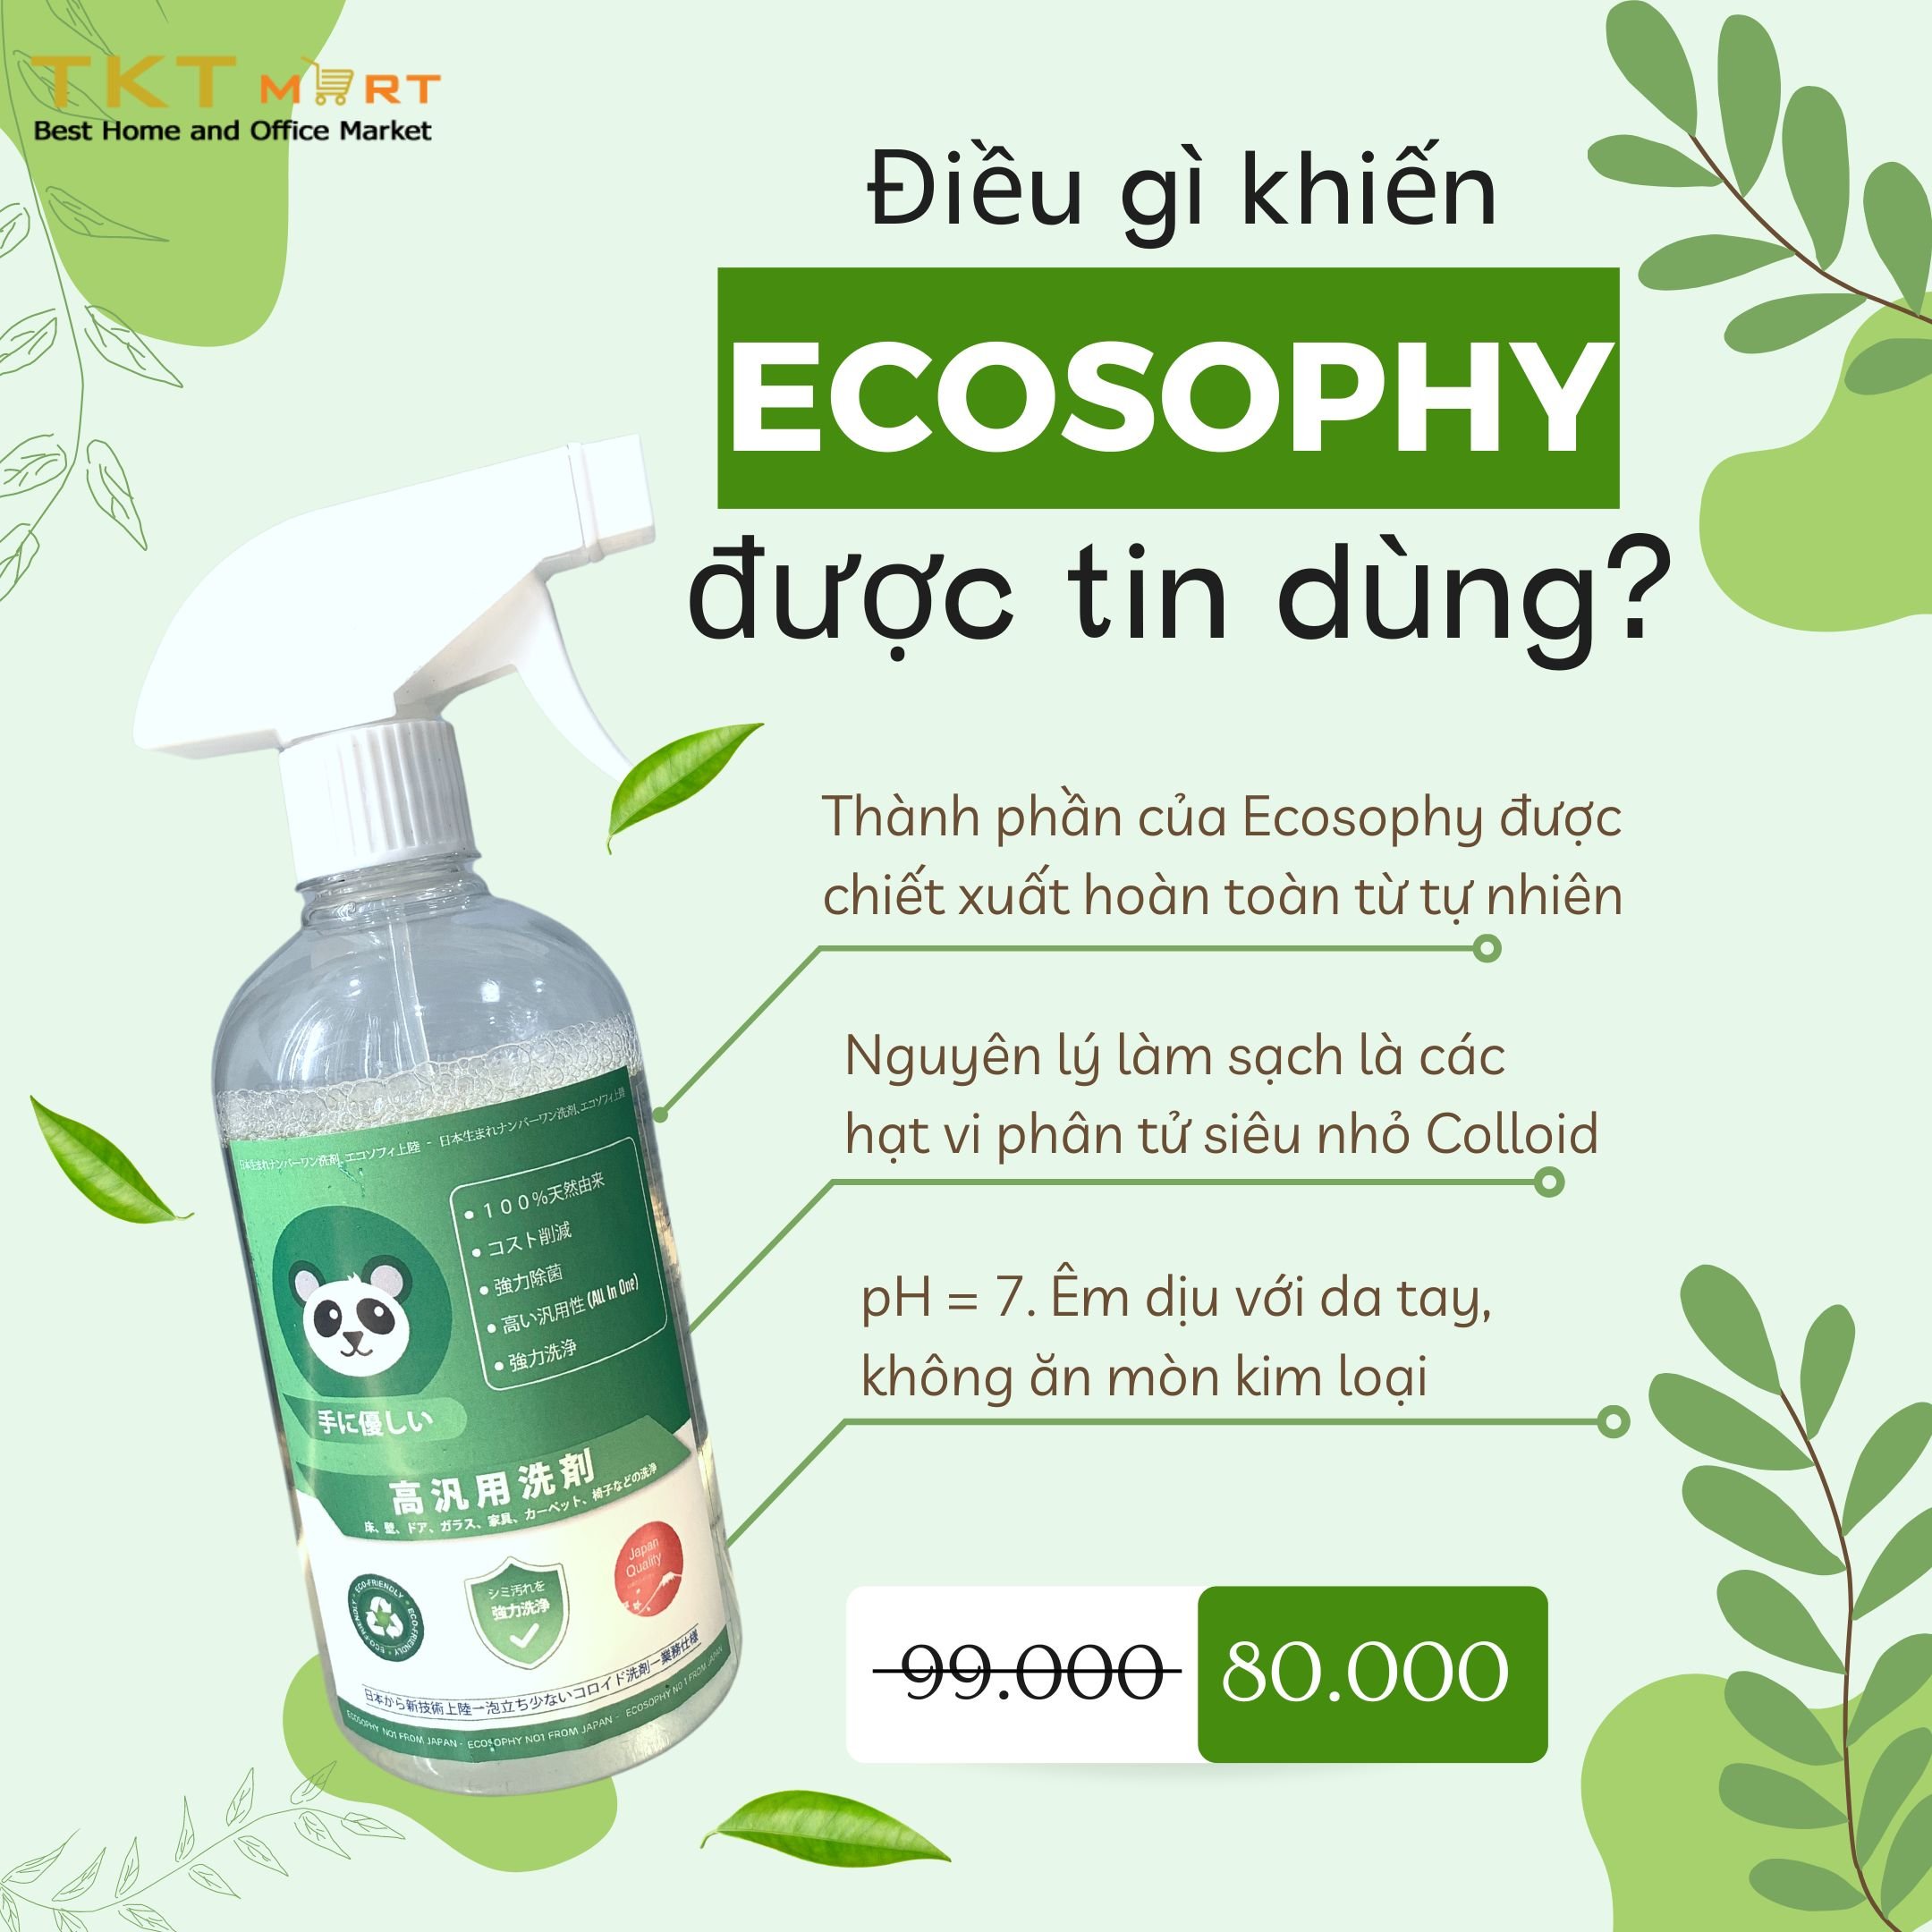 Hình ảnh: Chất tẩy rửa đa năng sinh học Ecosophy